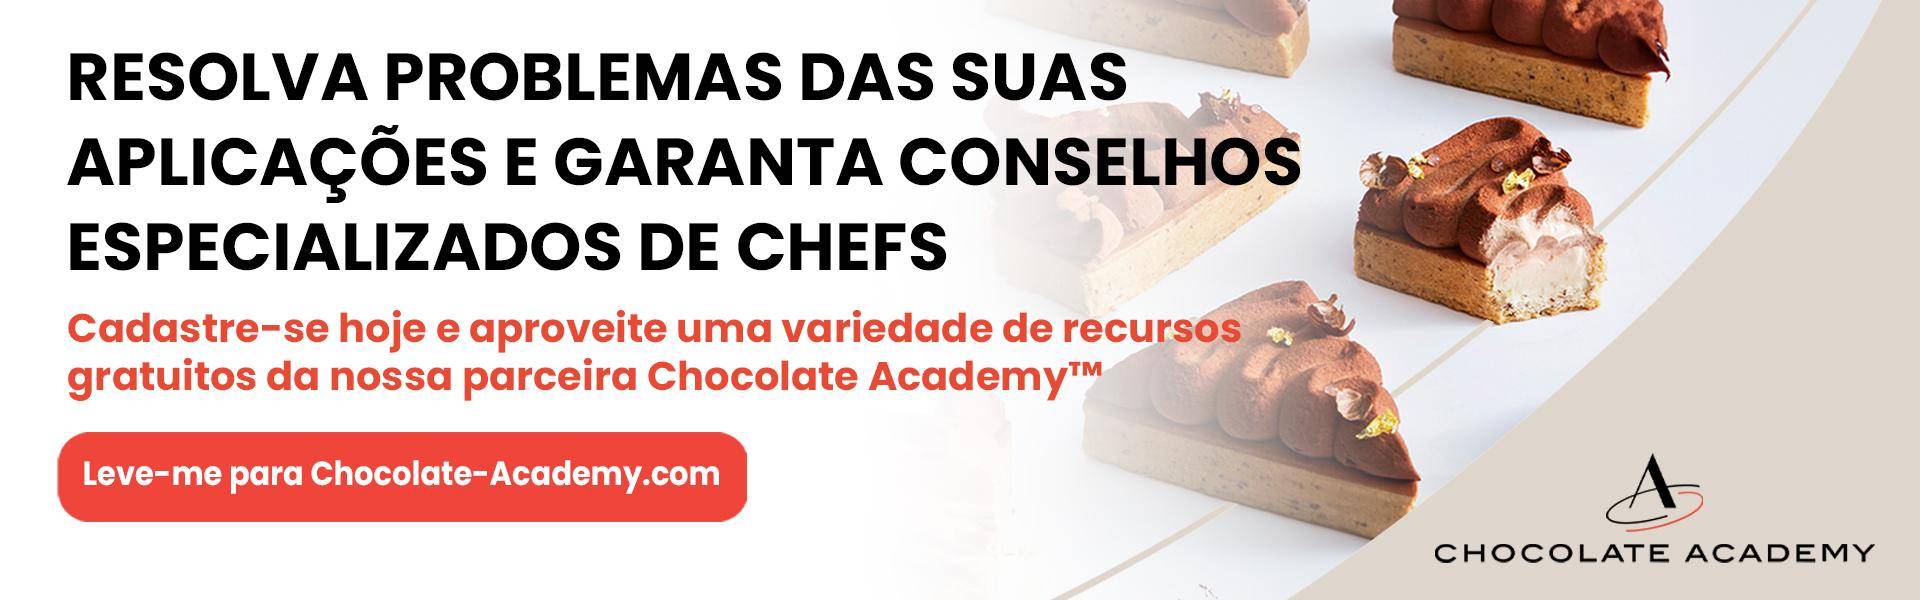 Leve-me para Chocolate-Academy.com